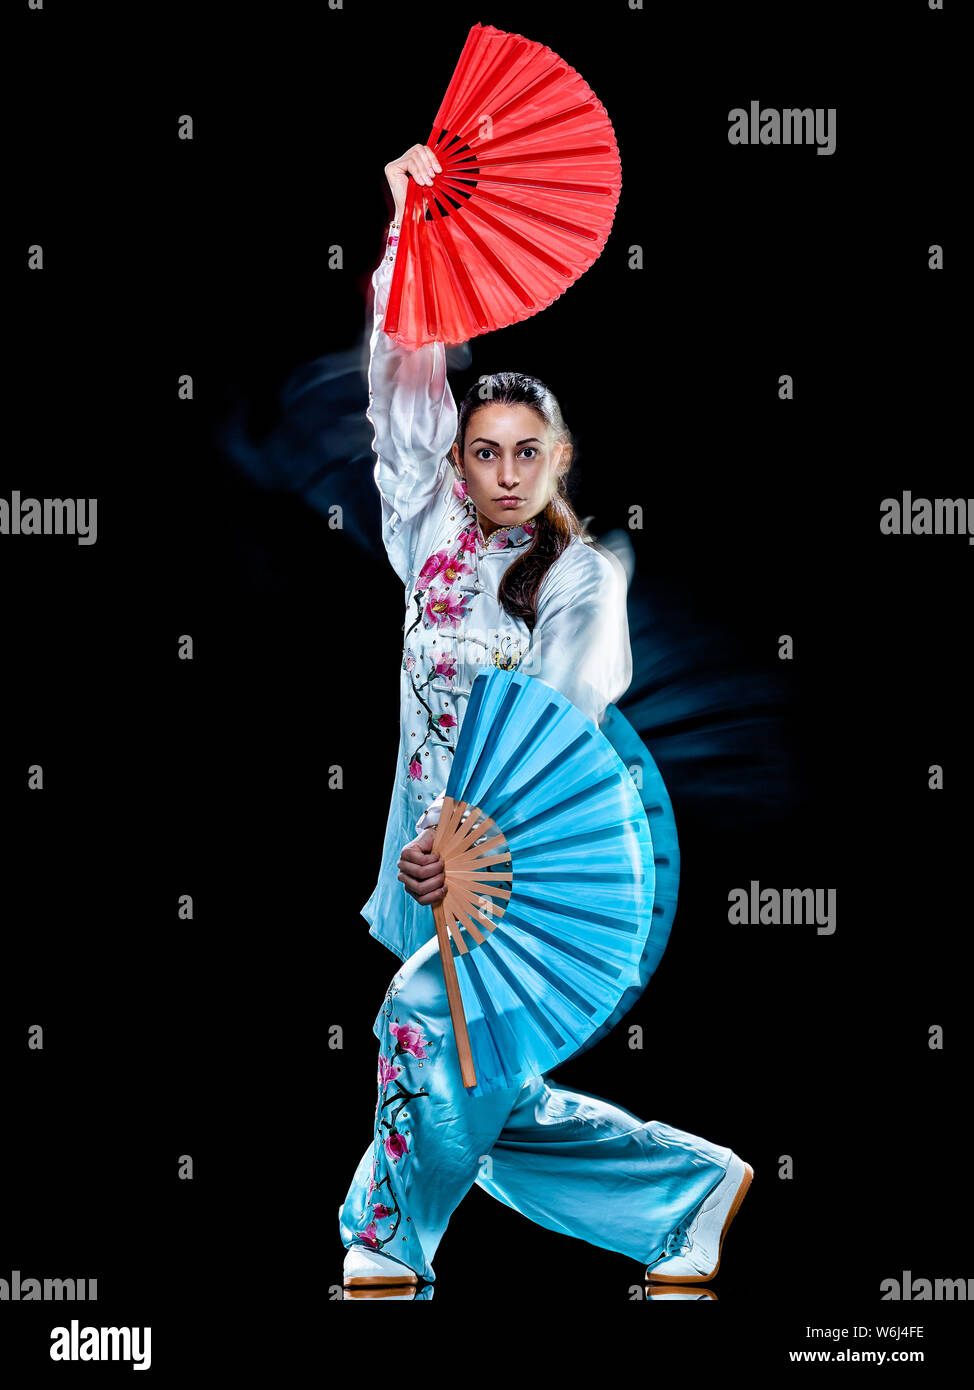 Une femme chinoise Tai Chi Chuan partacticing Tadjiquan posture studio shot isolé sur fond noir avec effet light painting Banque D'Images